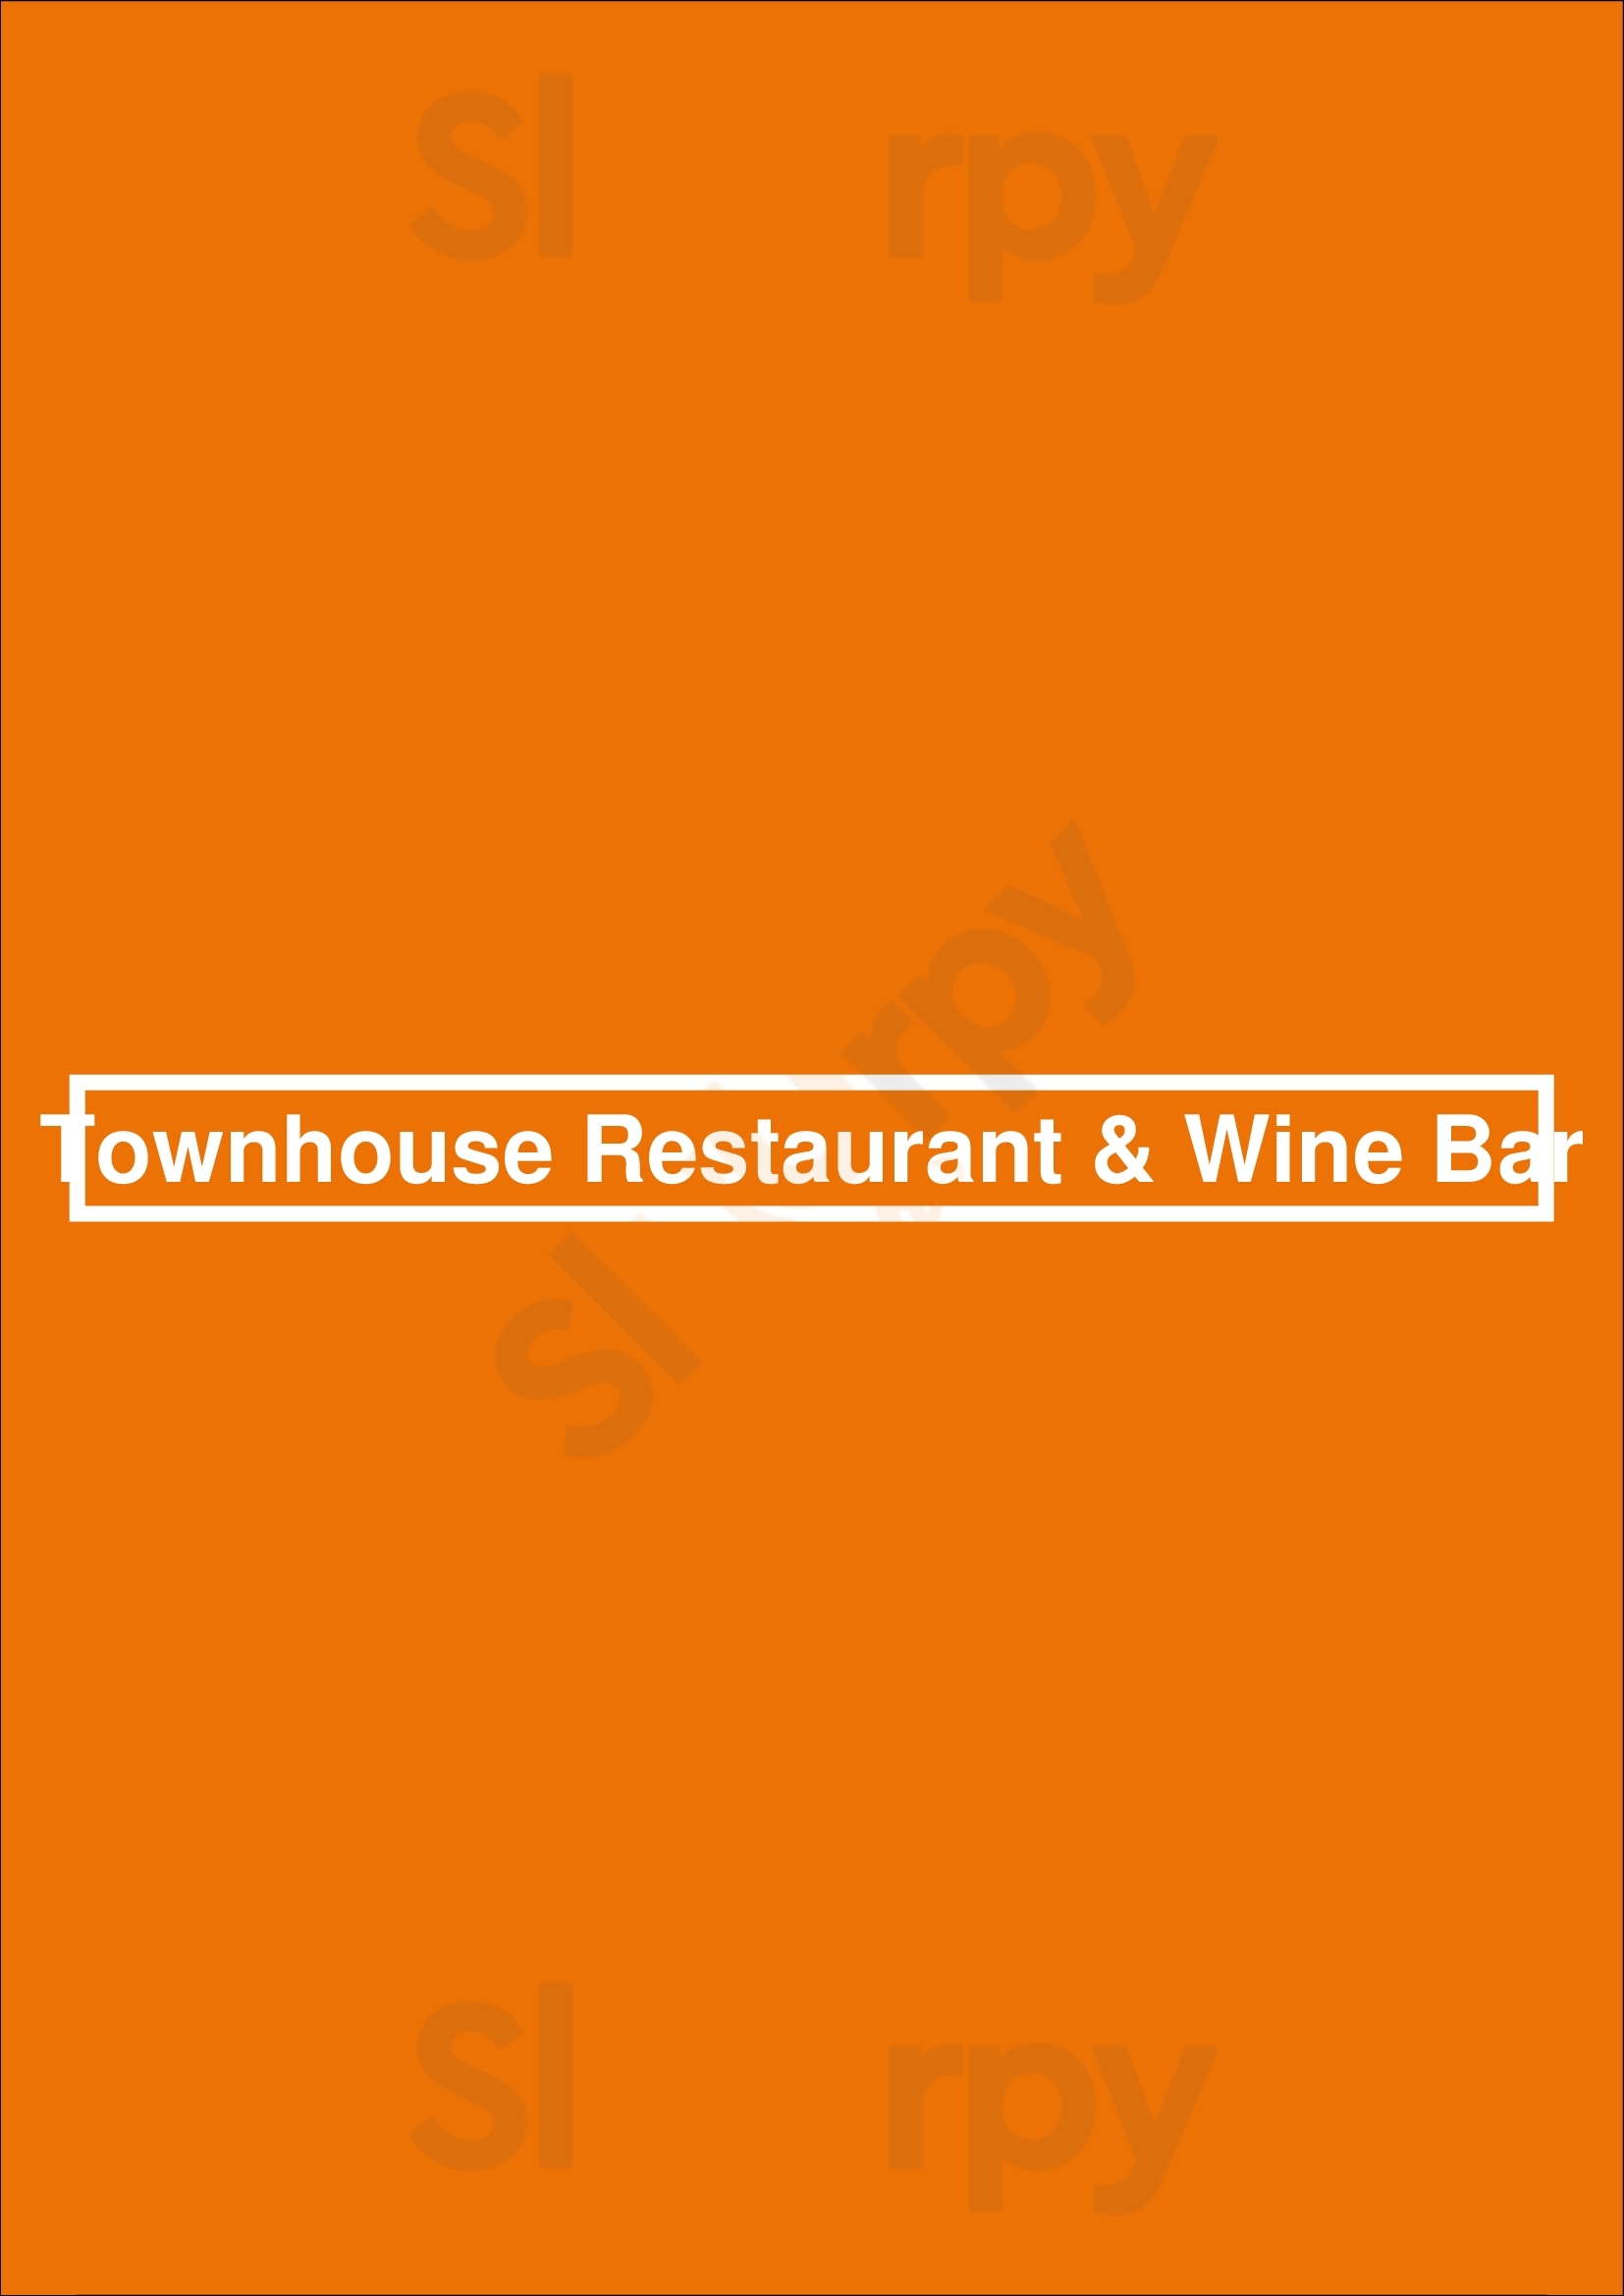 Townhouse Restaurant & Wine Bar Chicago Menu - 1